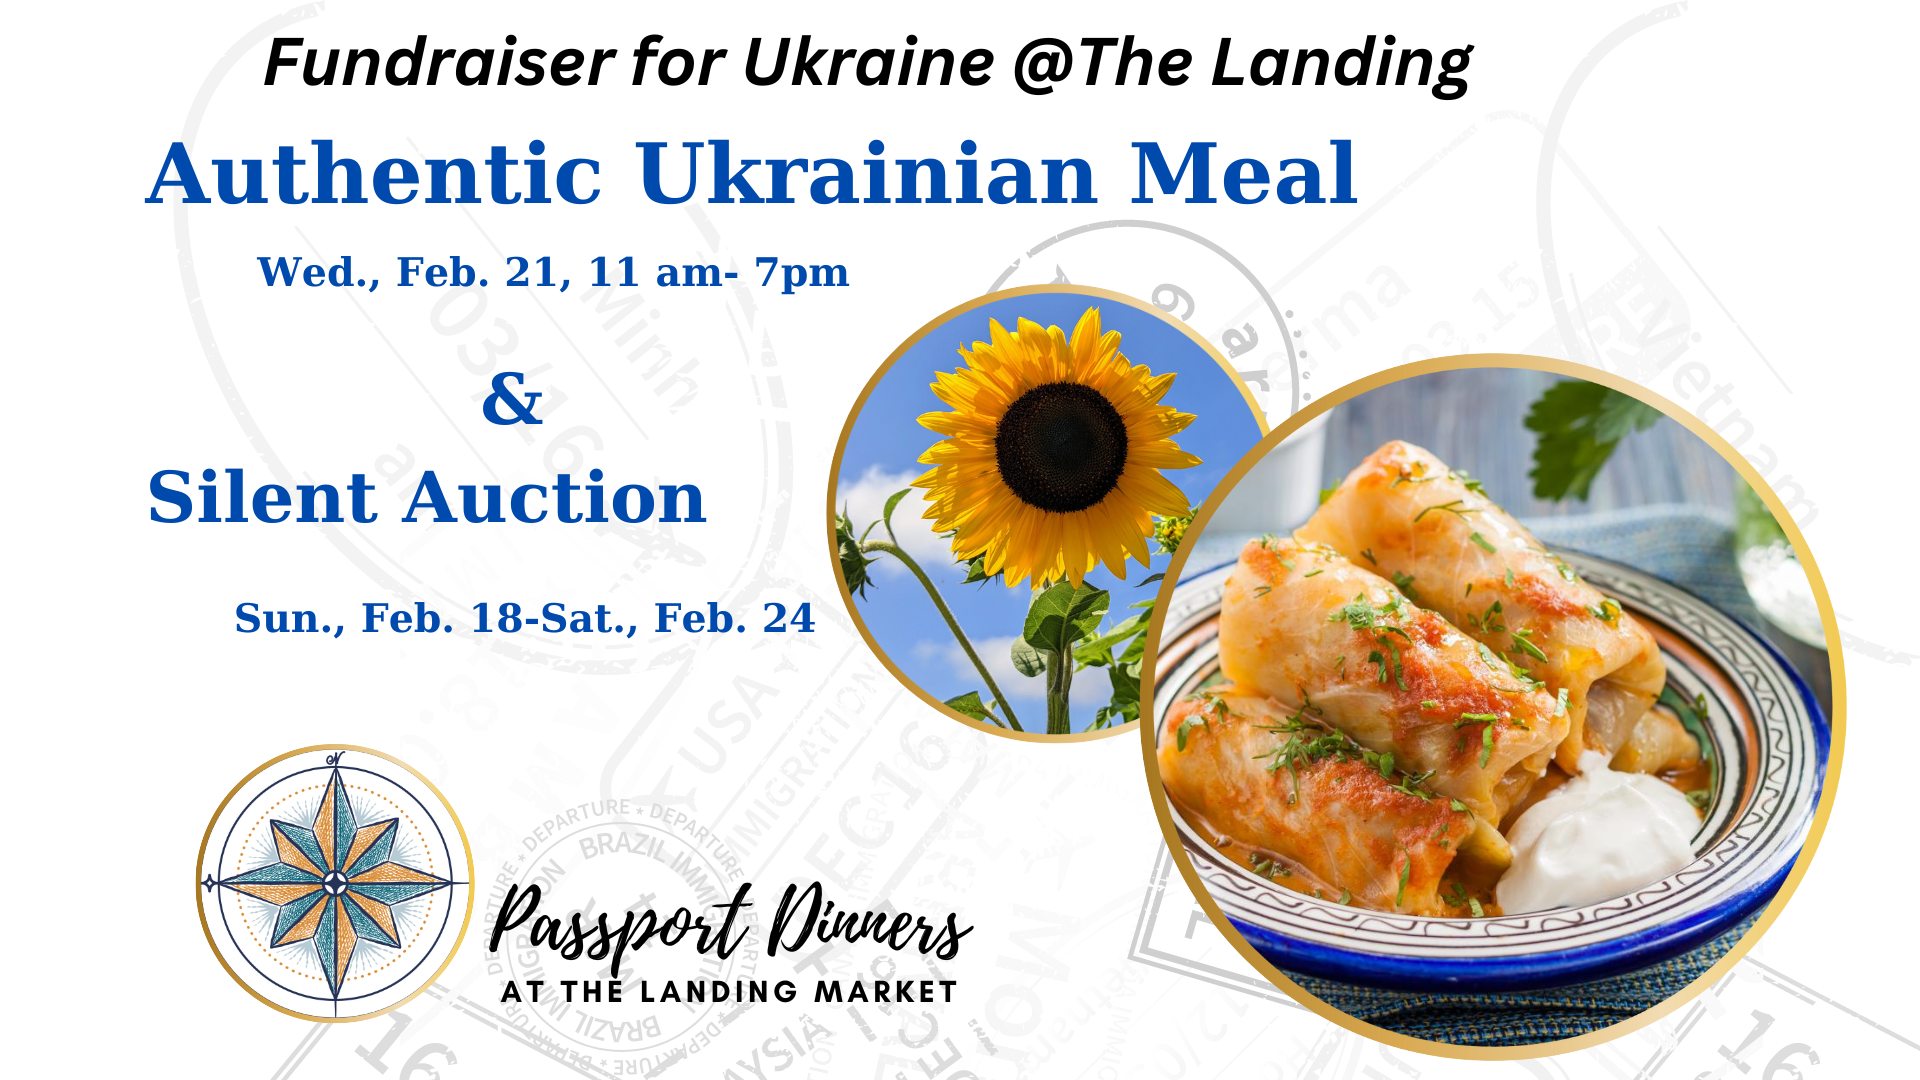 Passport Dinner & Silent Auction - Fundraiser for Ukraine thumbnail